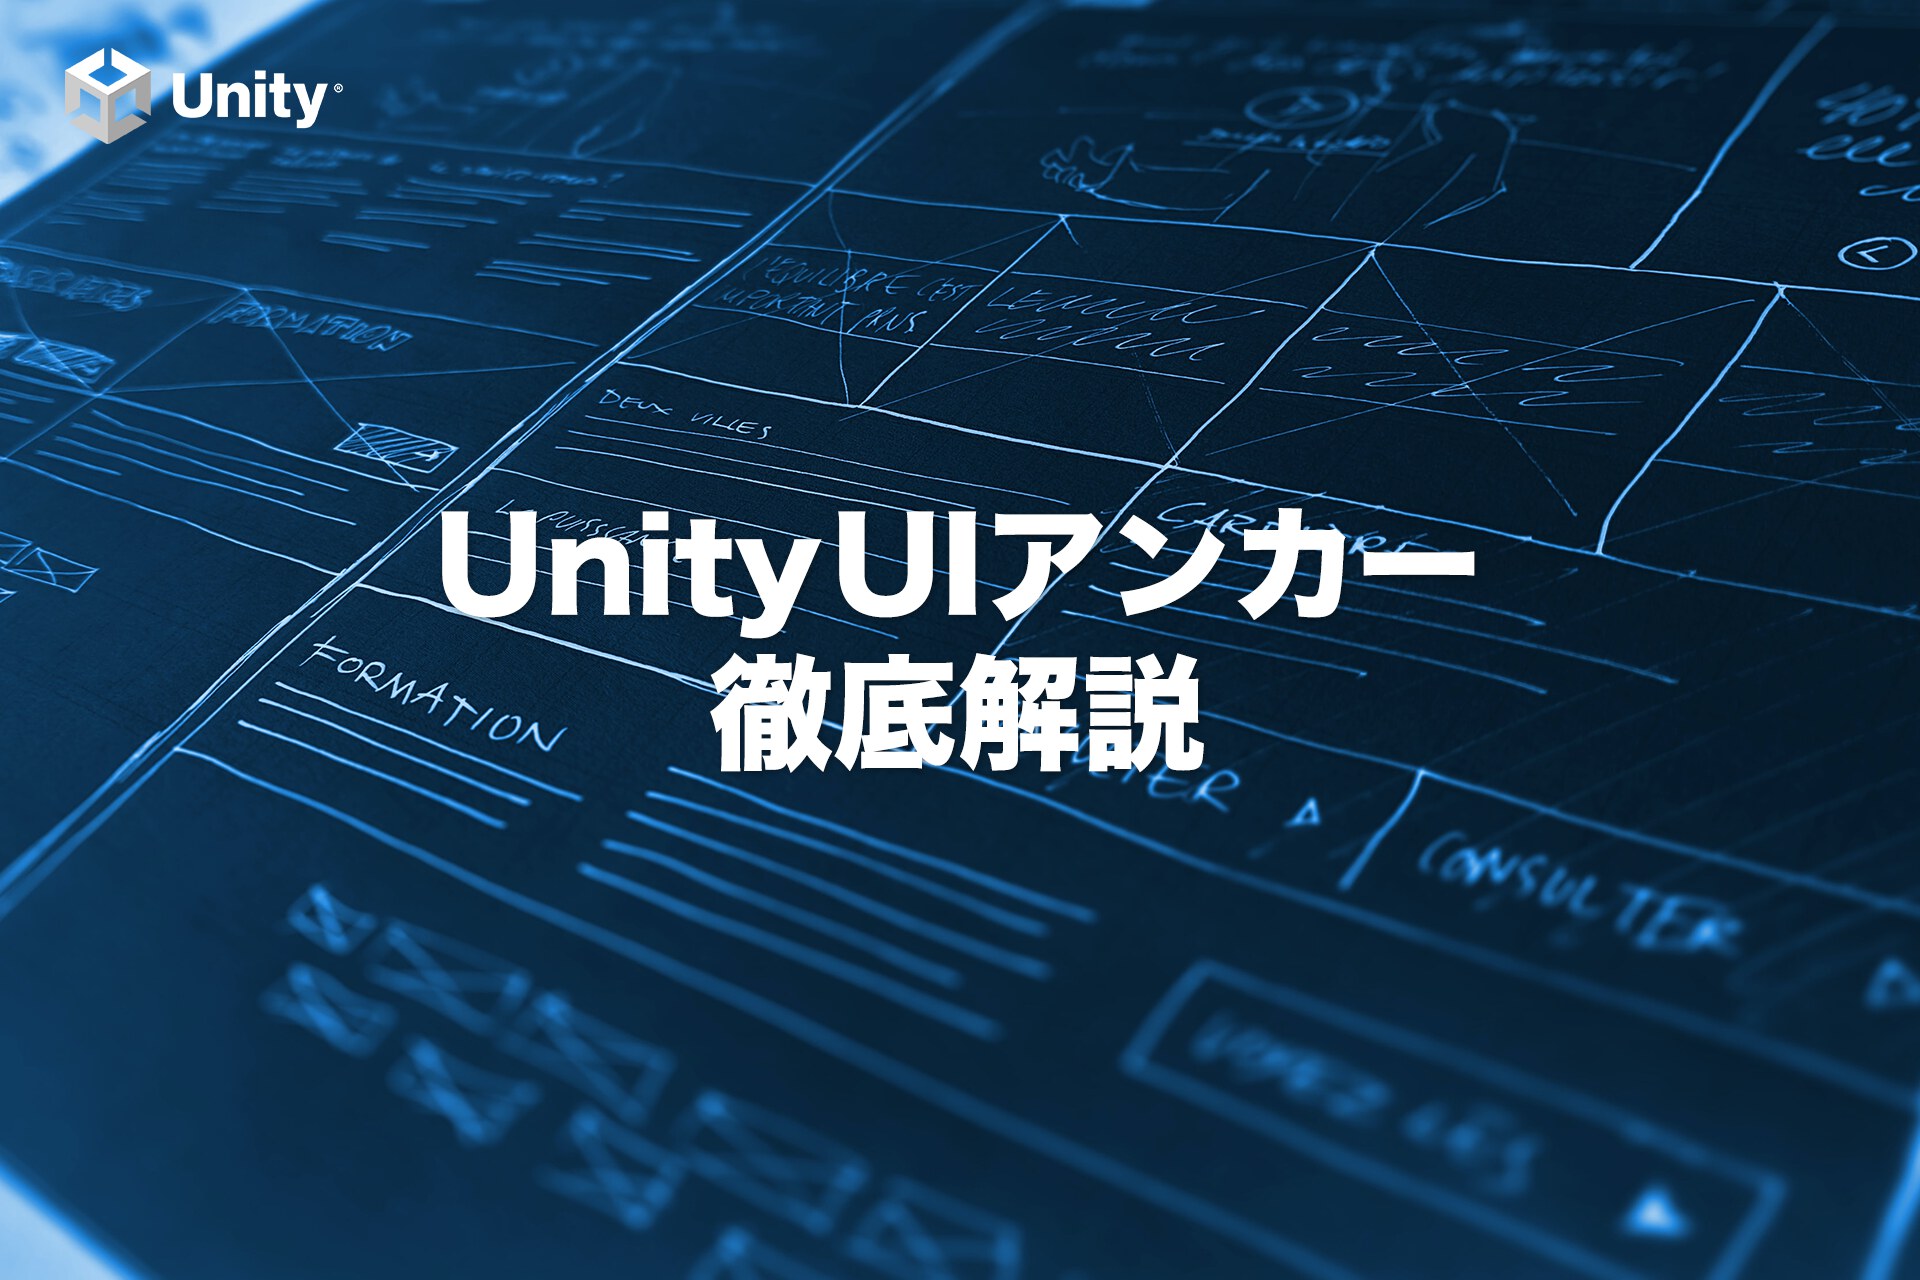 【Unity】3つだけでいい!?覚えるべきUIアンカー